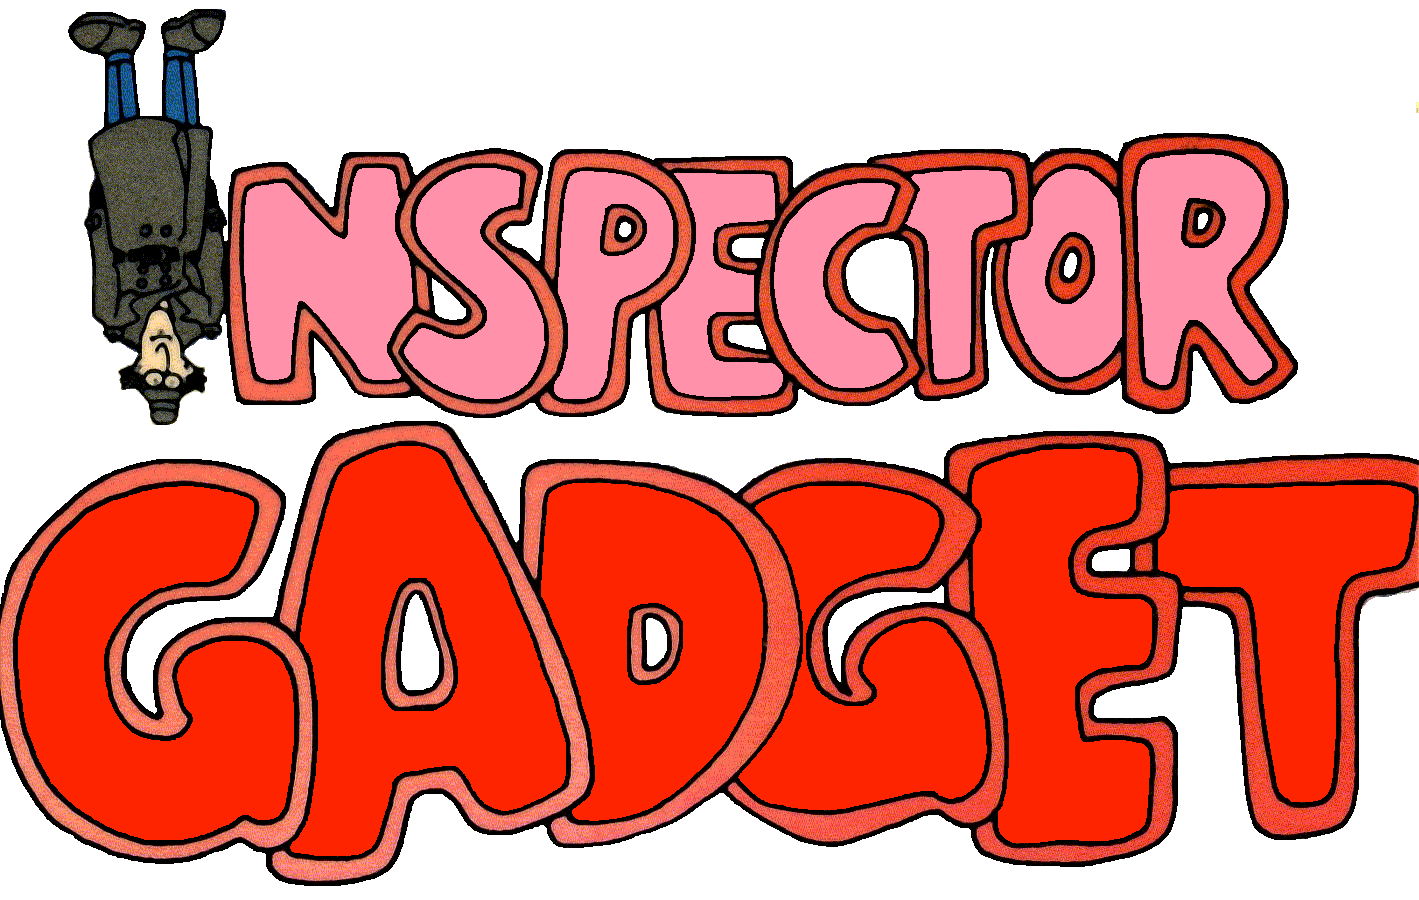 Inspector Gadget - Image